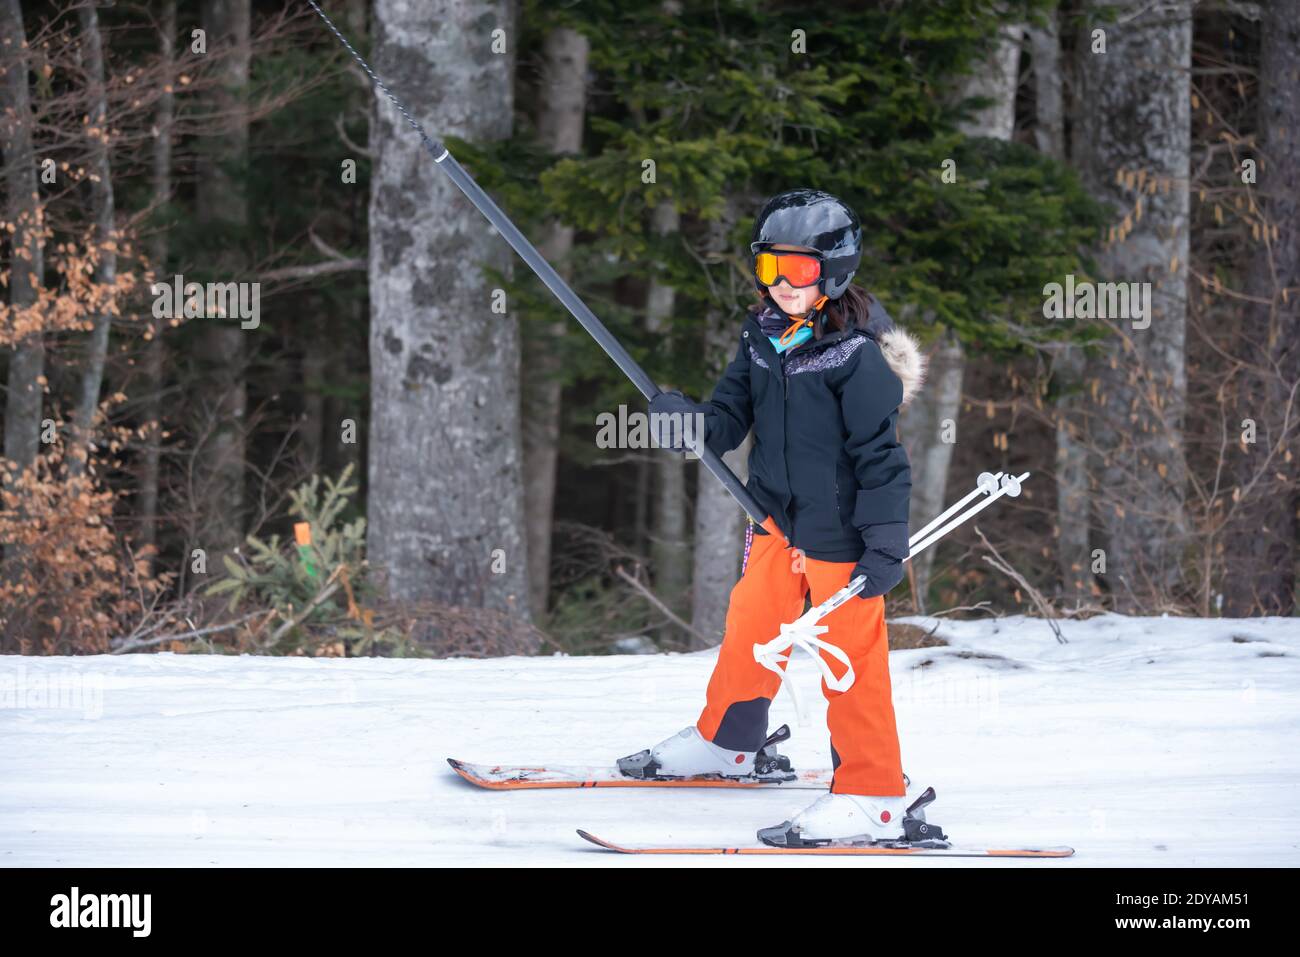 Skifahren im Schnee. Ein asiatisches Mädchen, das auf dem Skilift sitzt, indem es das Seil ergreifet und Skistöcke hält. Urlaub in der Schweiz. Glückliche Kindheit, Stockfoto